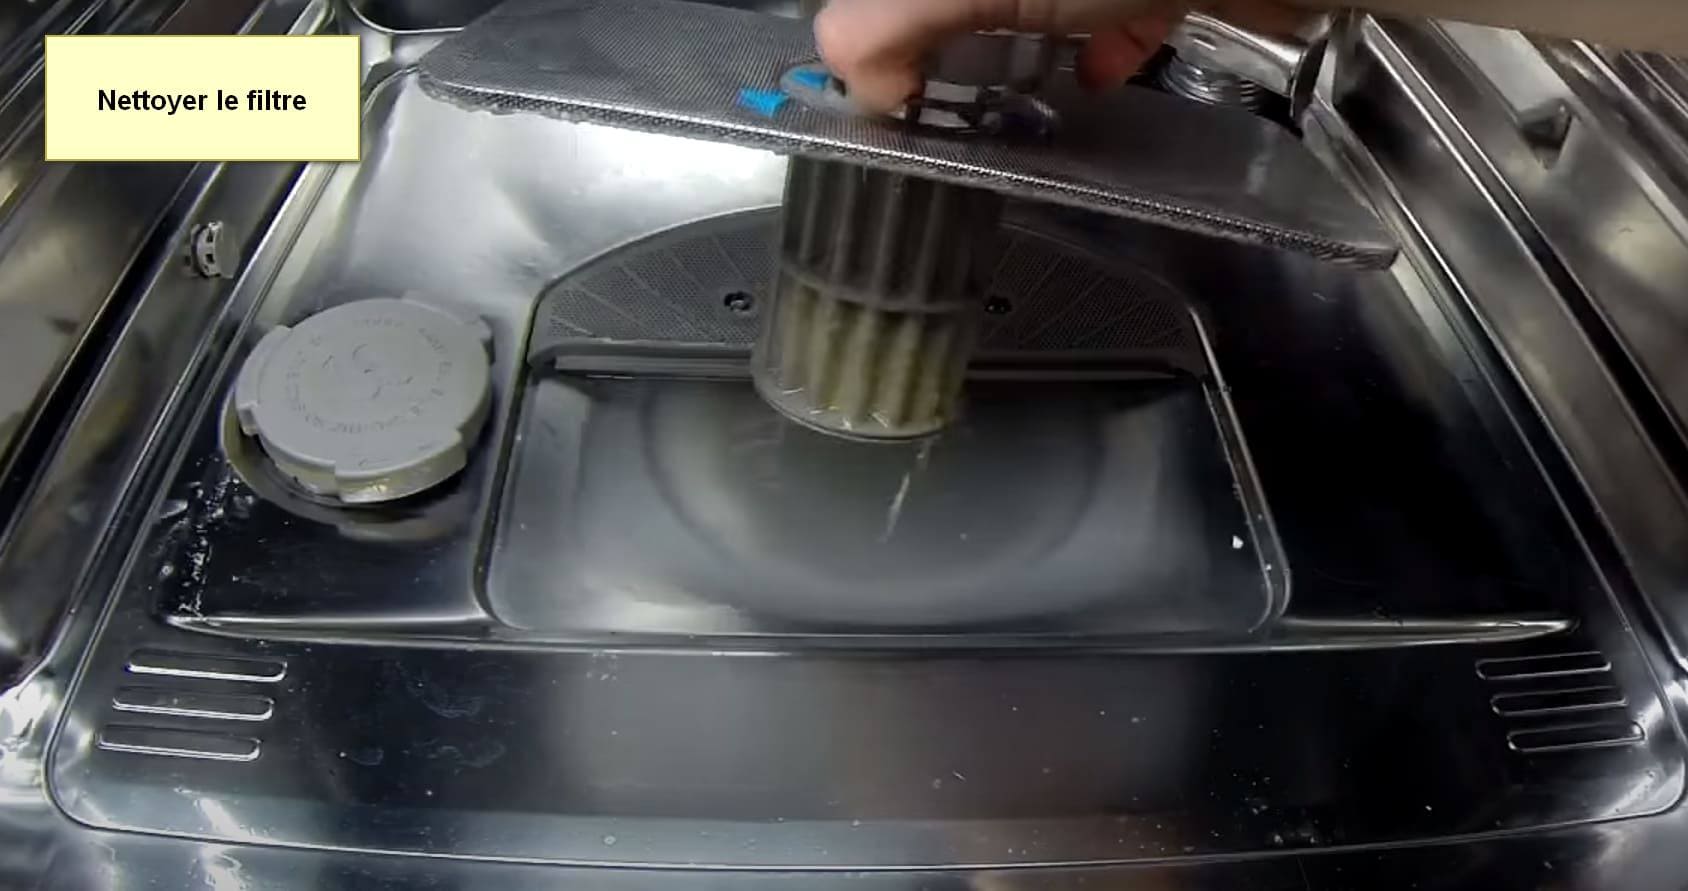 Code d'erreur du lave-vaisselle Siemens E25 nettoyer le filtre